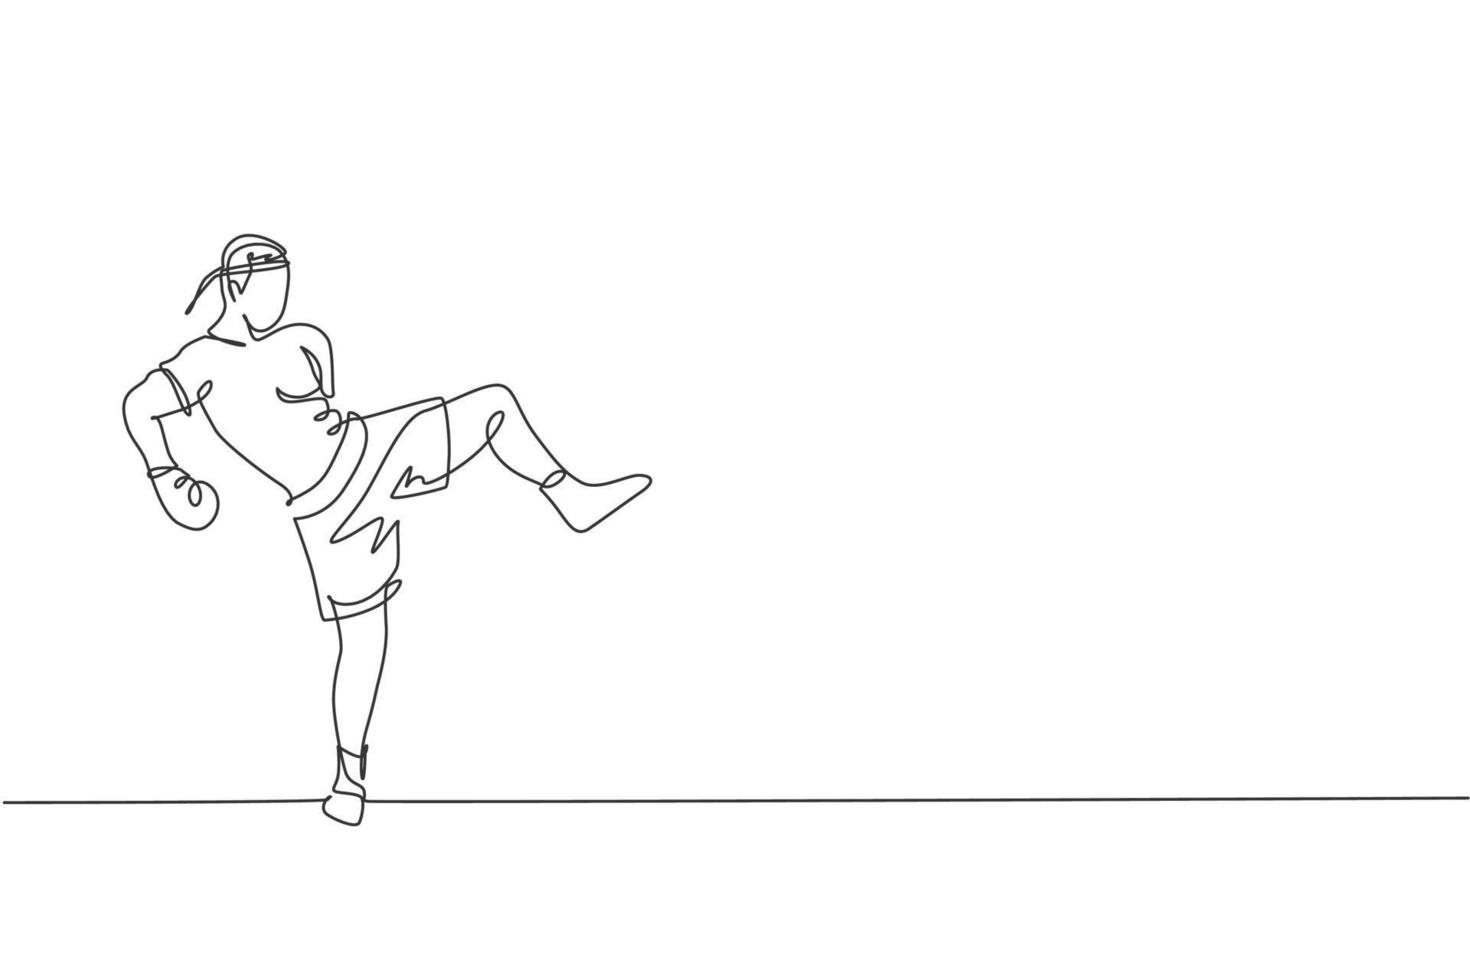 un dessin en ligne continu d'un jeune boxeur sportif muay thai se préparant à se battre, coup de pied de position à l'arène de la boîte. concept de jeu de sport de combat. illustration vectorielle de dessin graphique à ligne unique dynamique vecteur